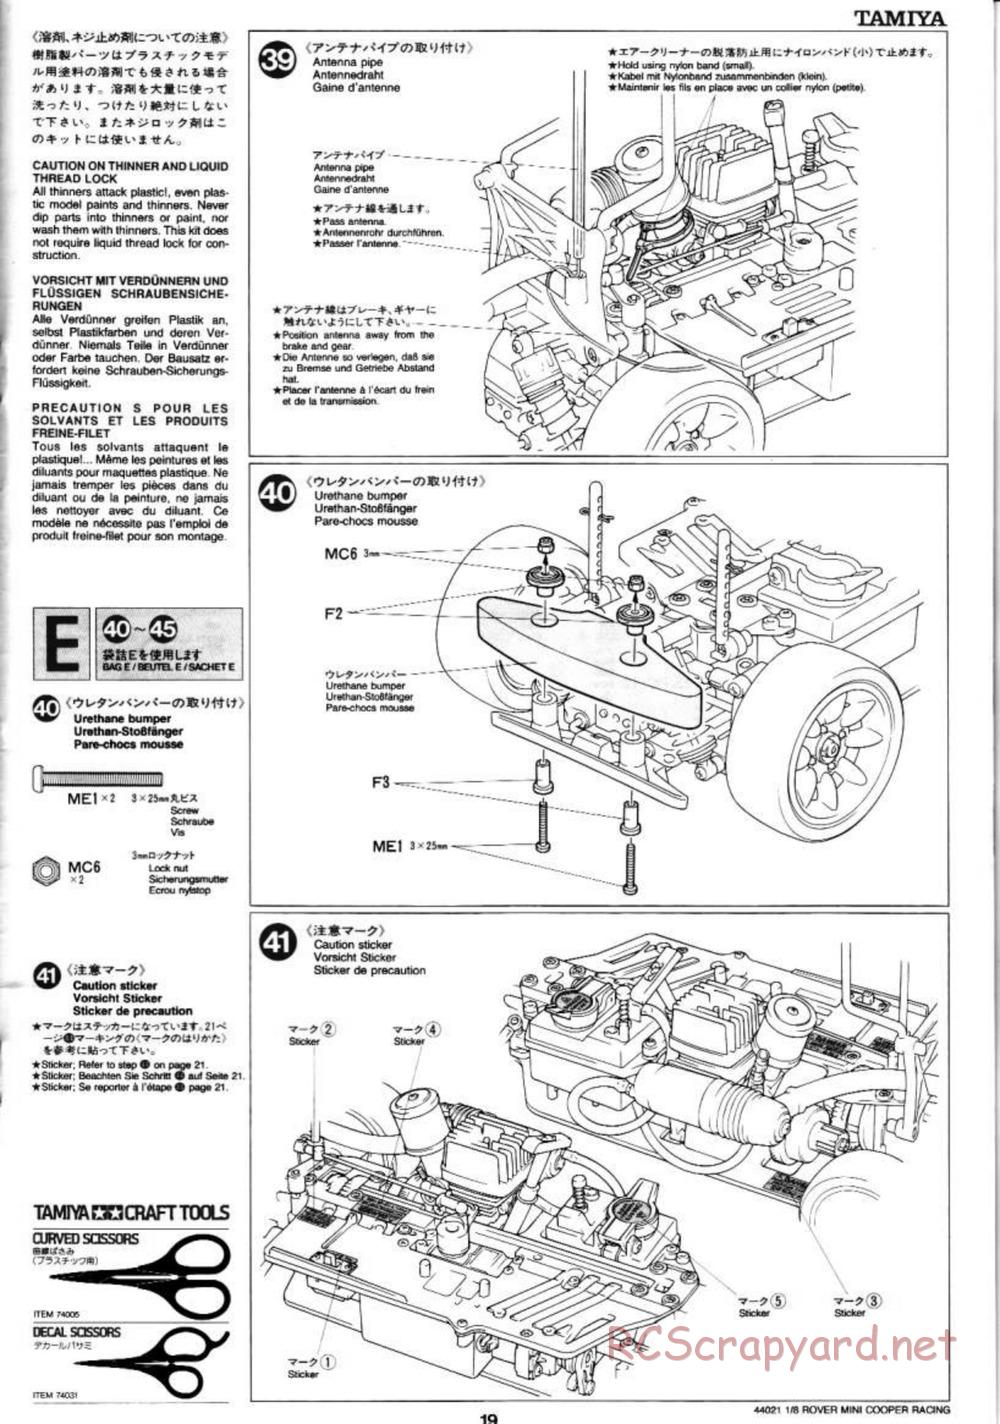 Tamiya - Rover Mini Cooper Racing - TG10 Mk.1 Chassis - Manual - Page 19